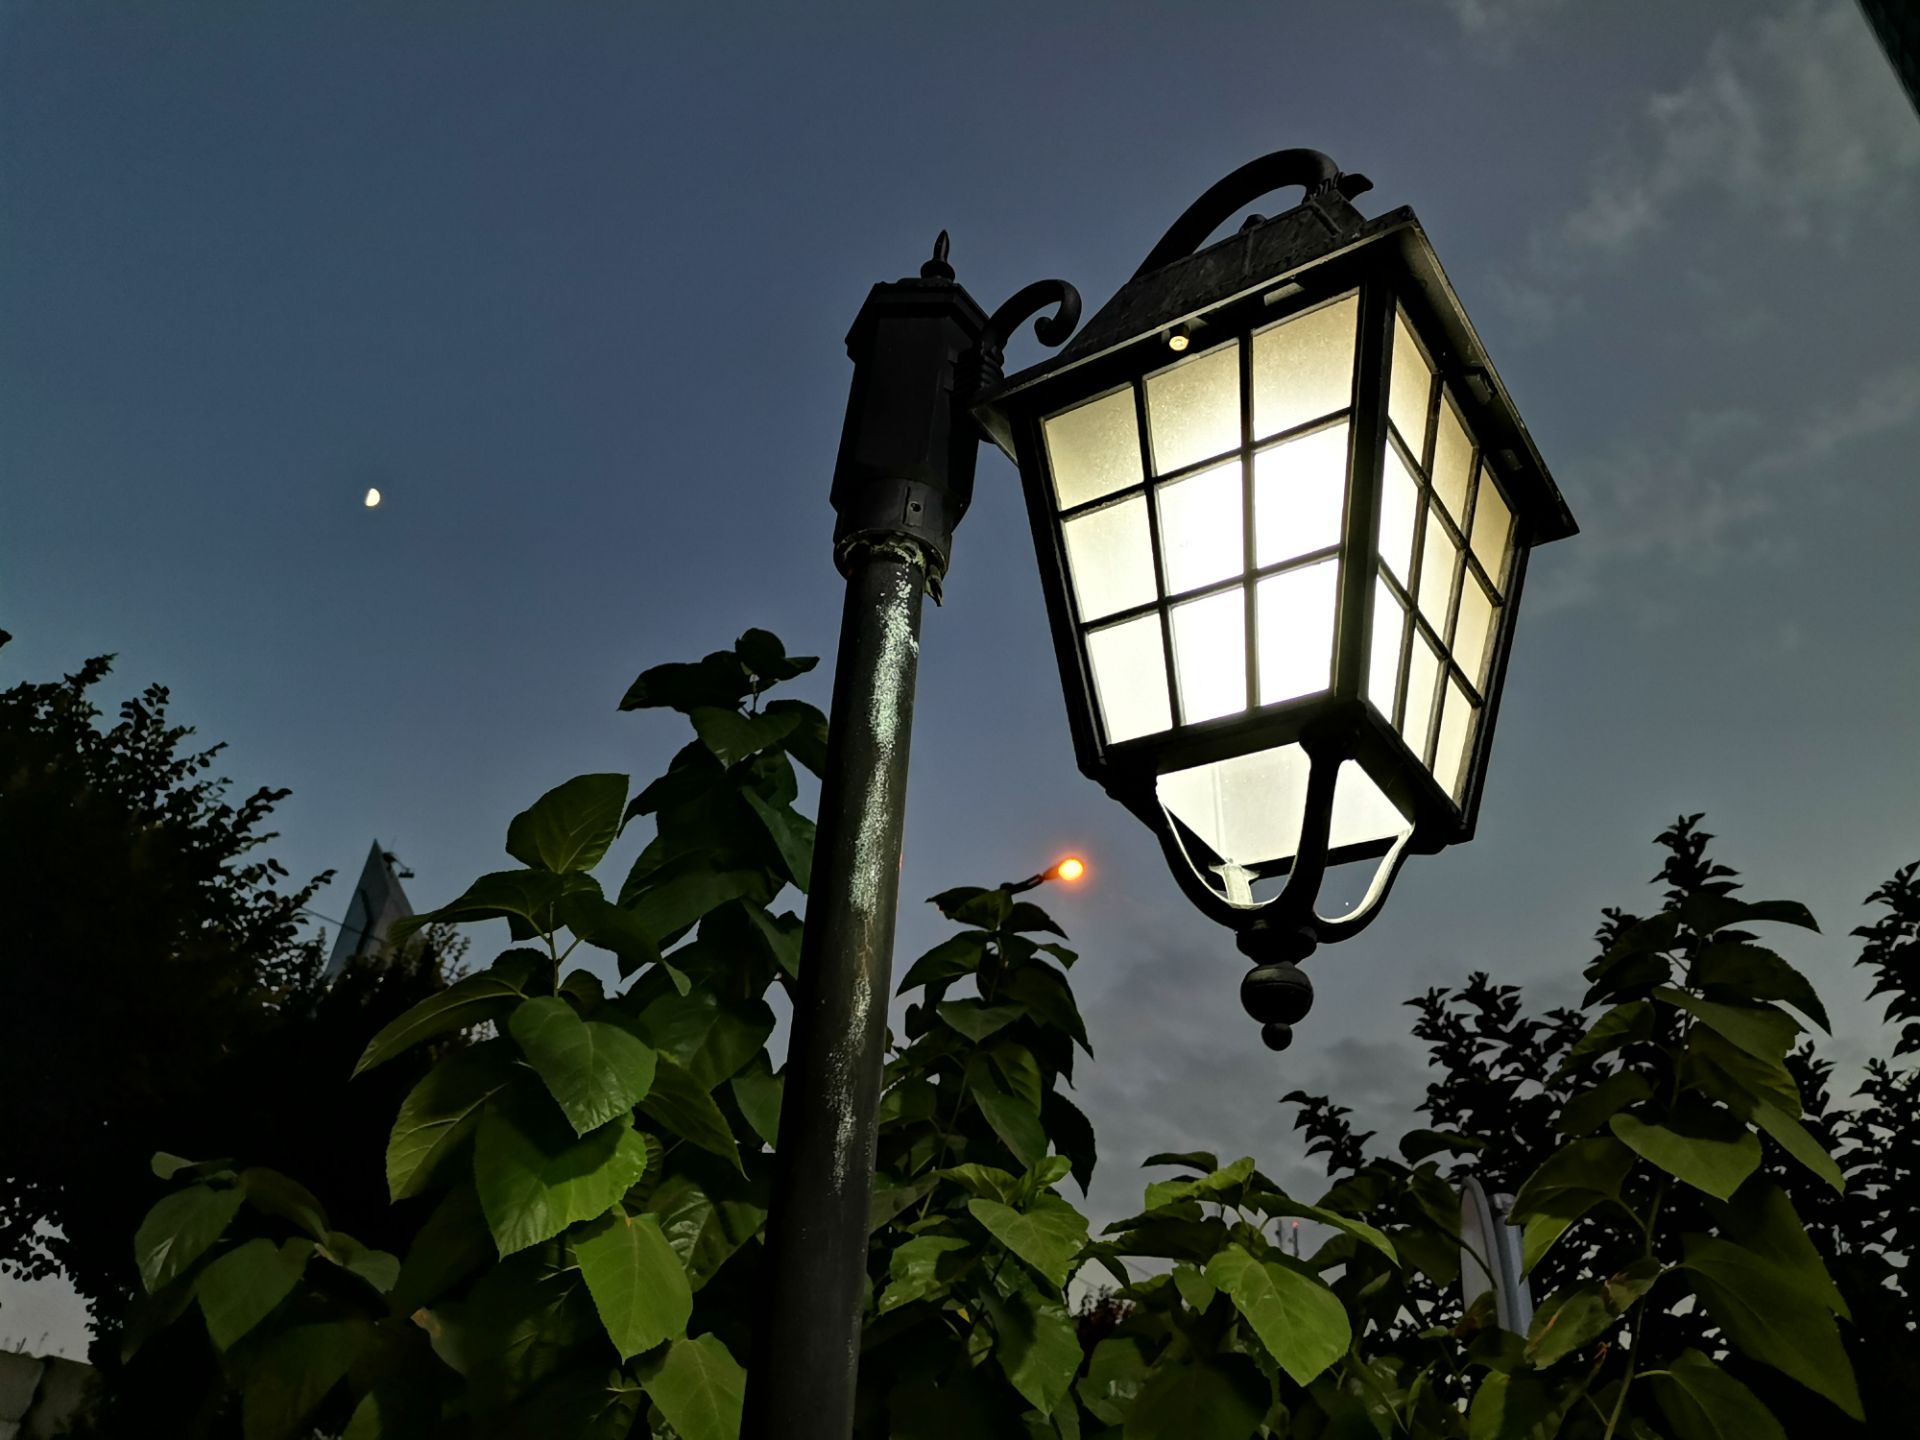 نمونه عکس دوربین هواوی نوا 7 آی - تیر چراغ برق در تاریکی